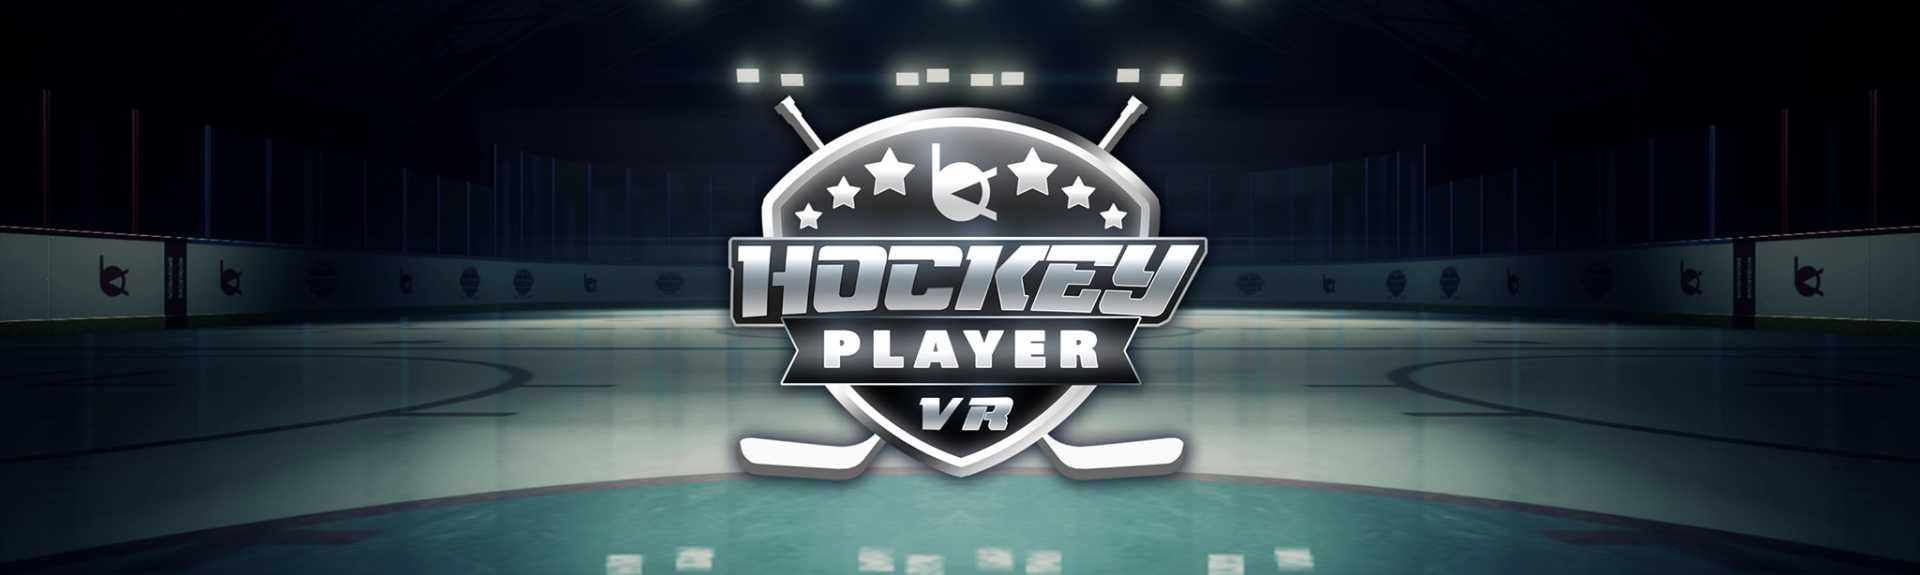 Hockey Player VR